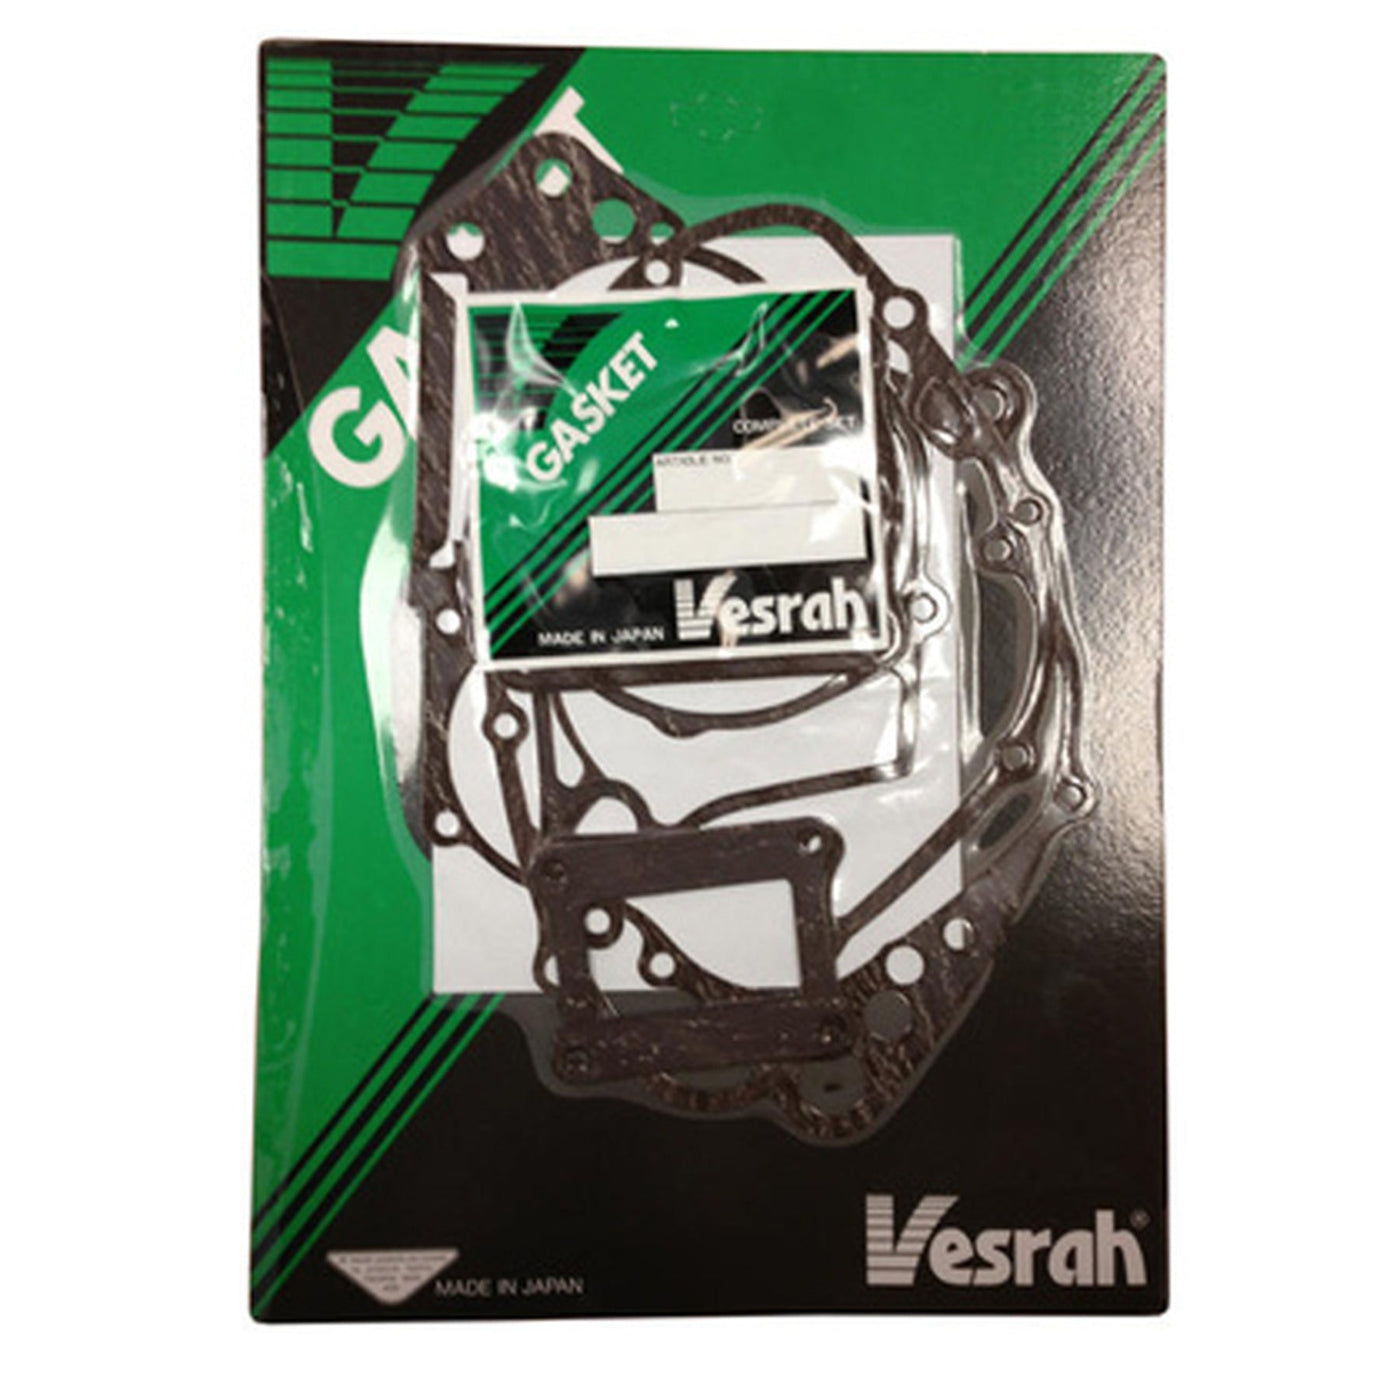 Vesrah VG-2041 Complete Gasket Kit #VG-2041